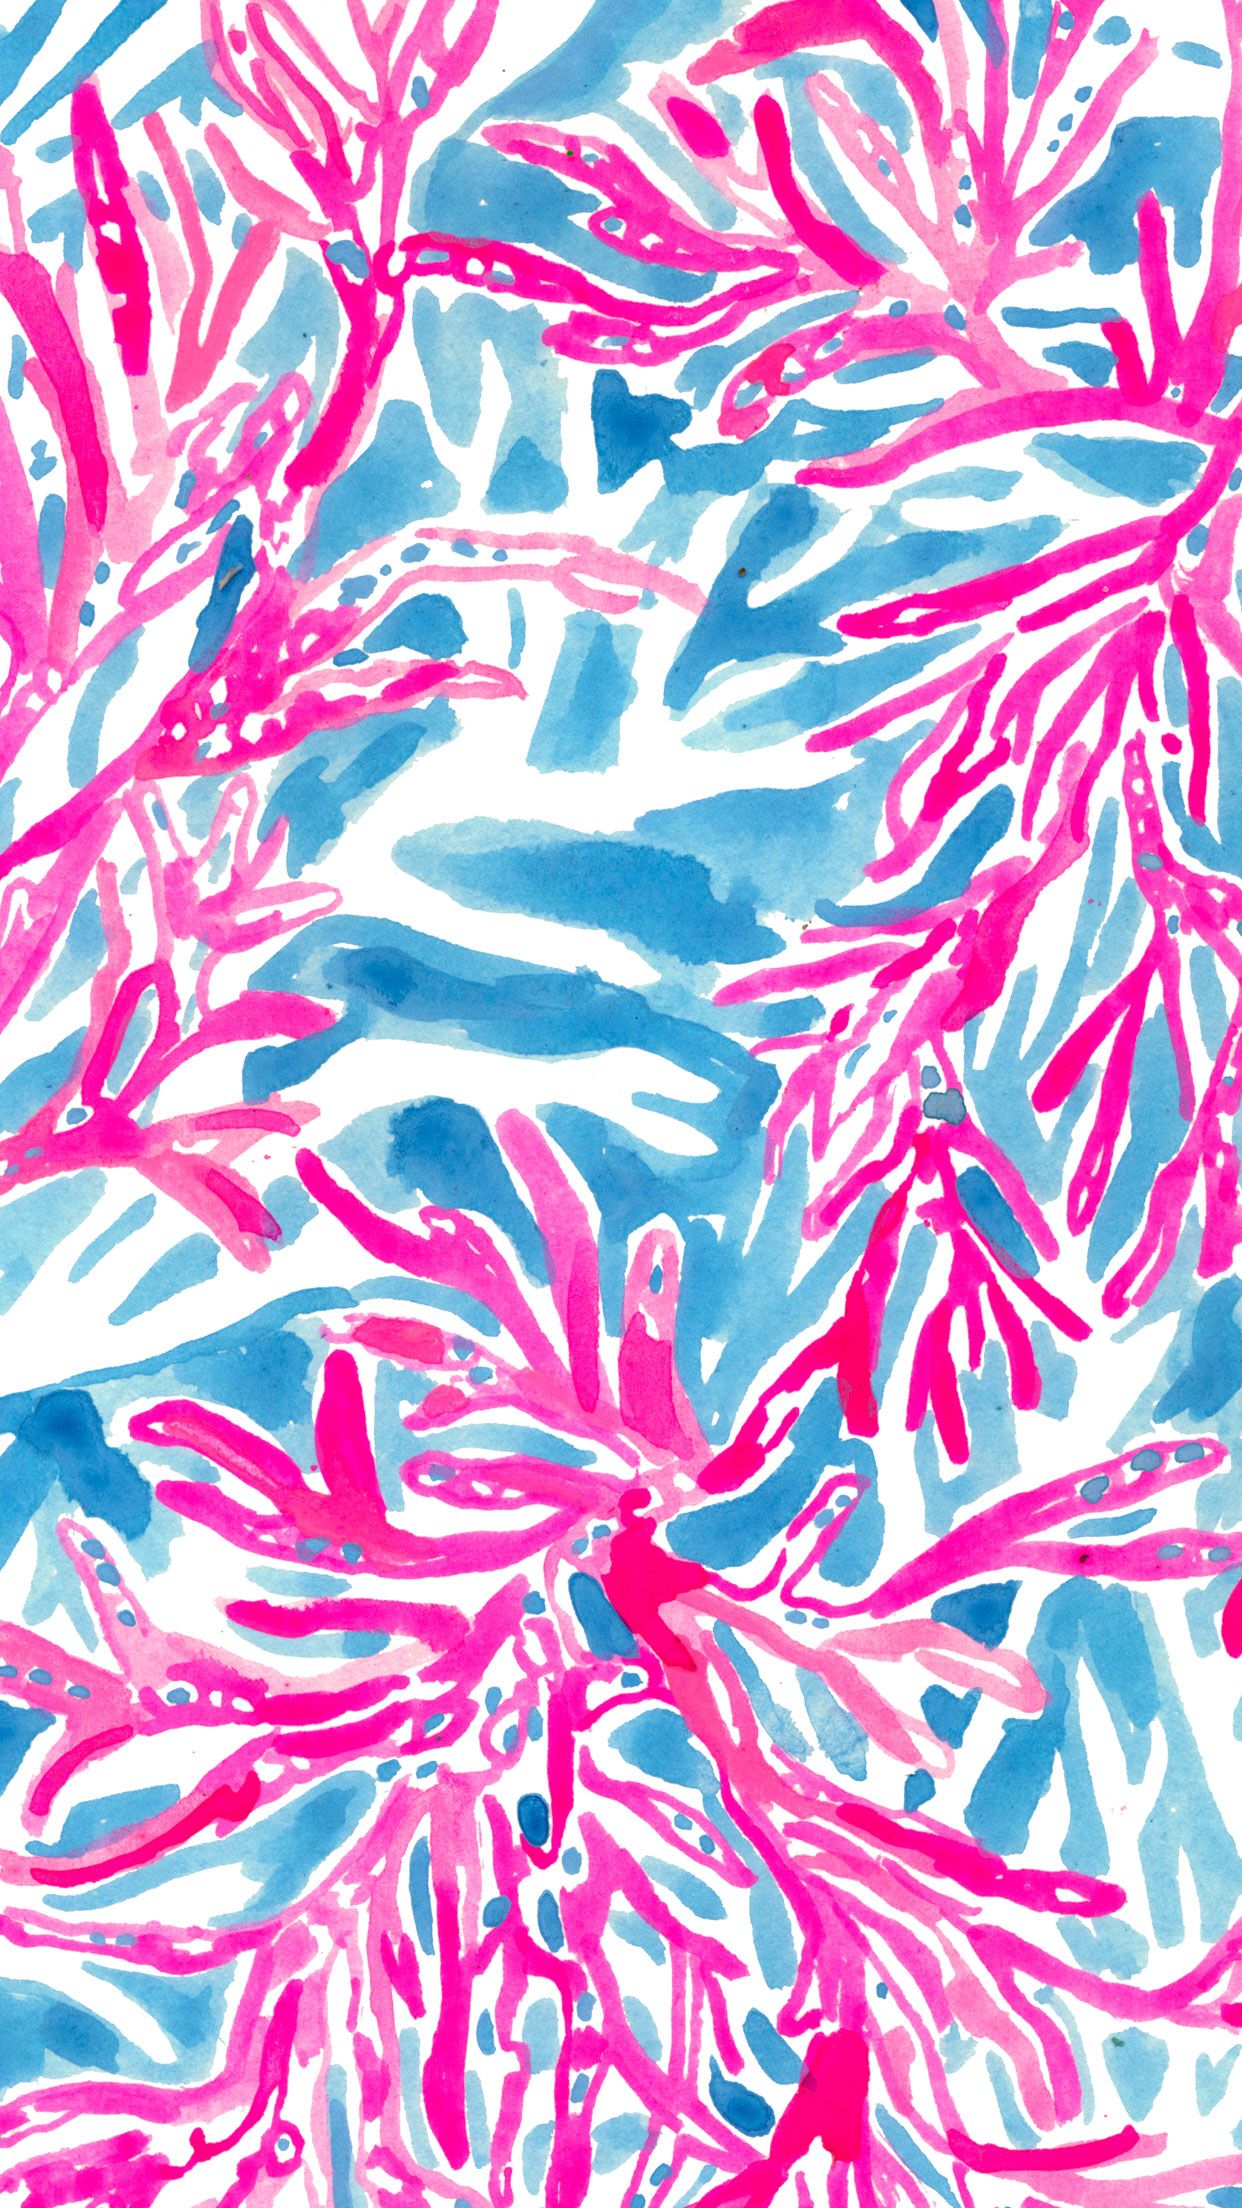 リリー・ピューリッツァーiphoneの壁紙,ピンク,パターン,繊維,設計,包装紙